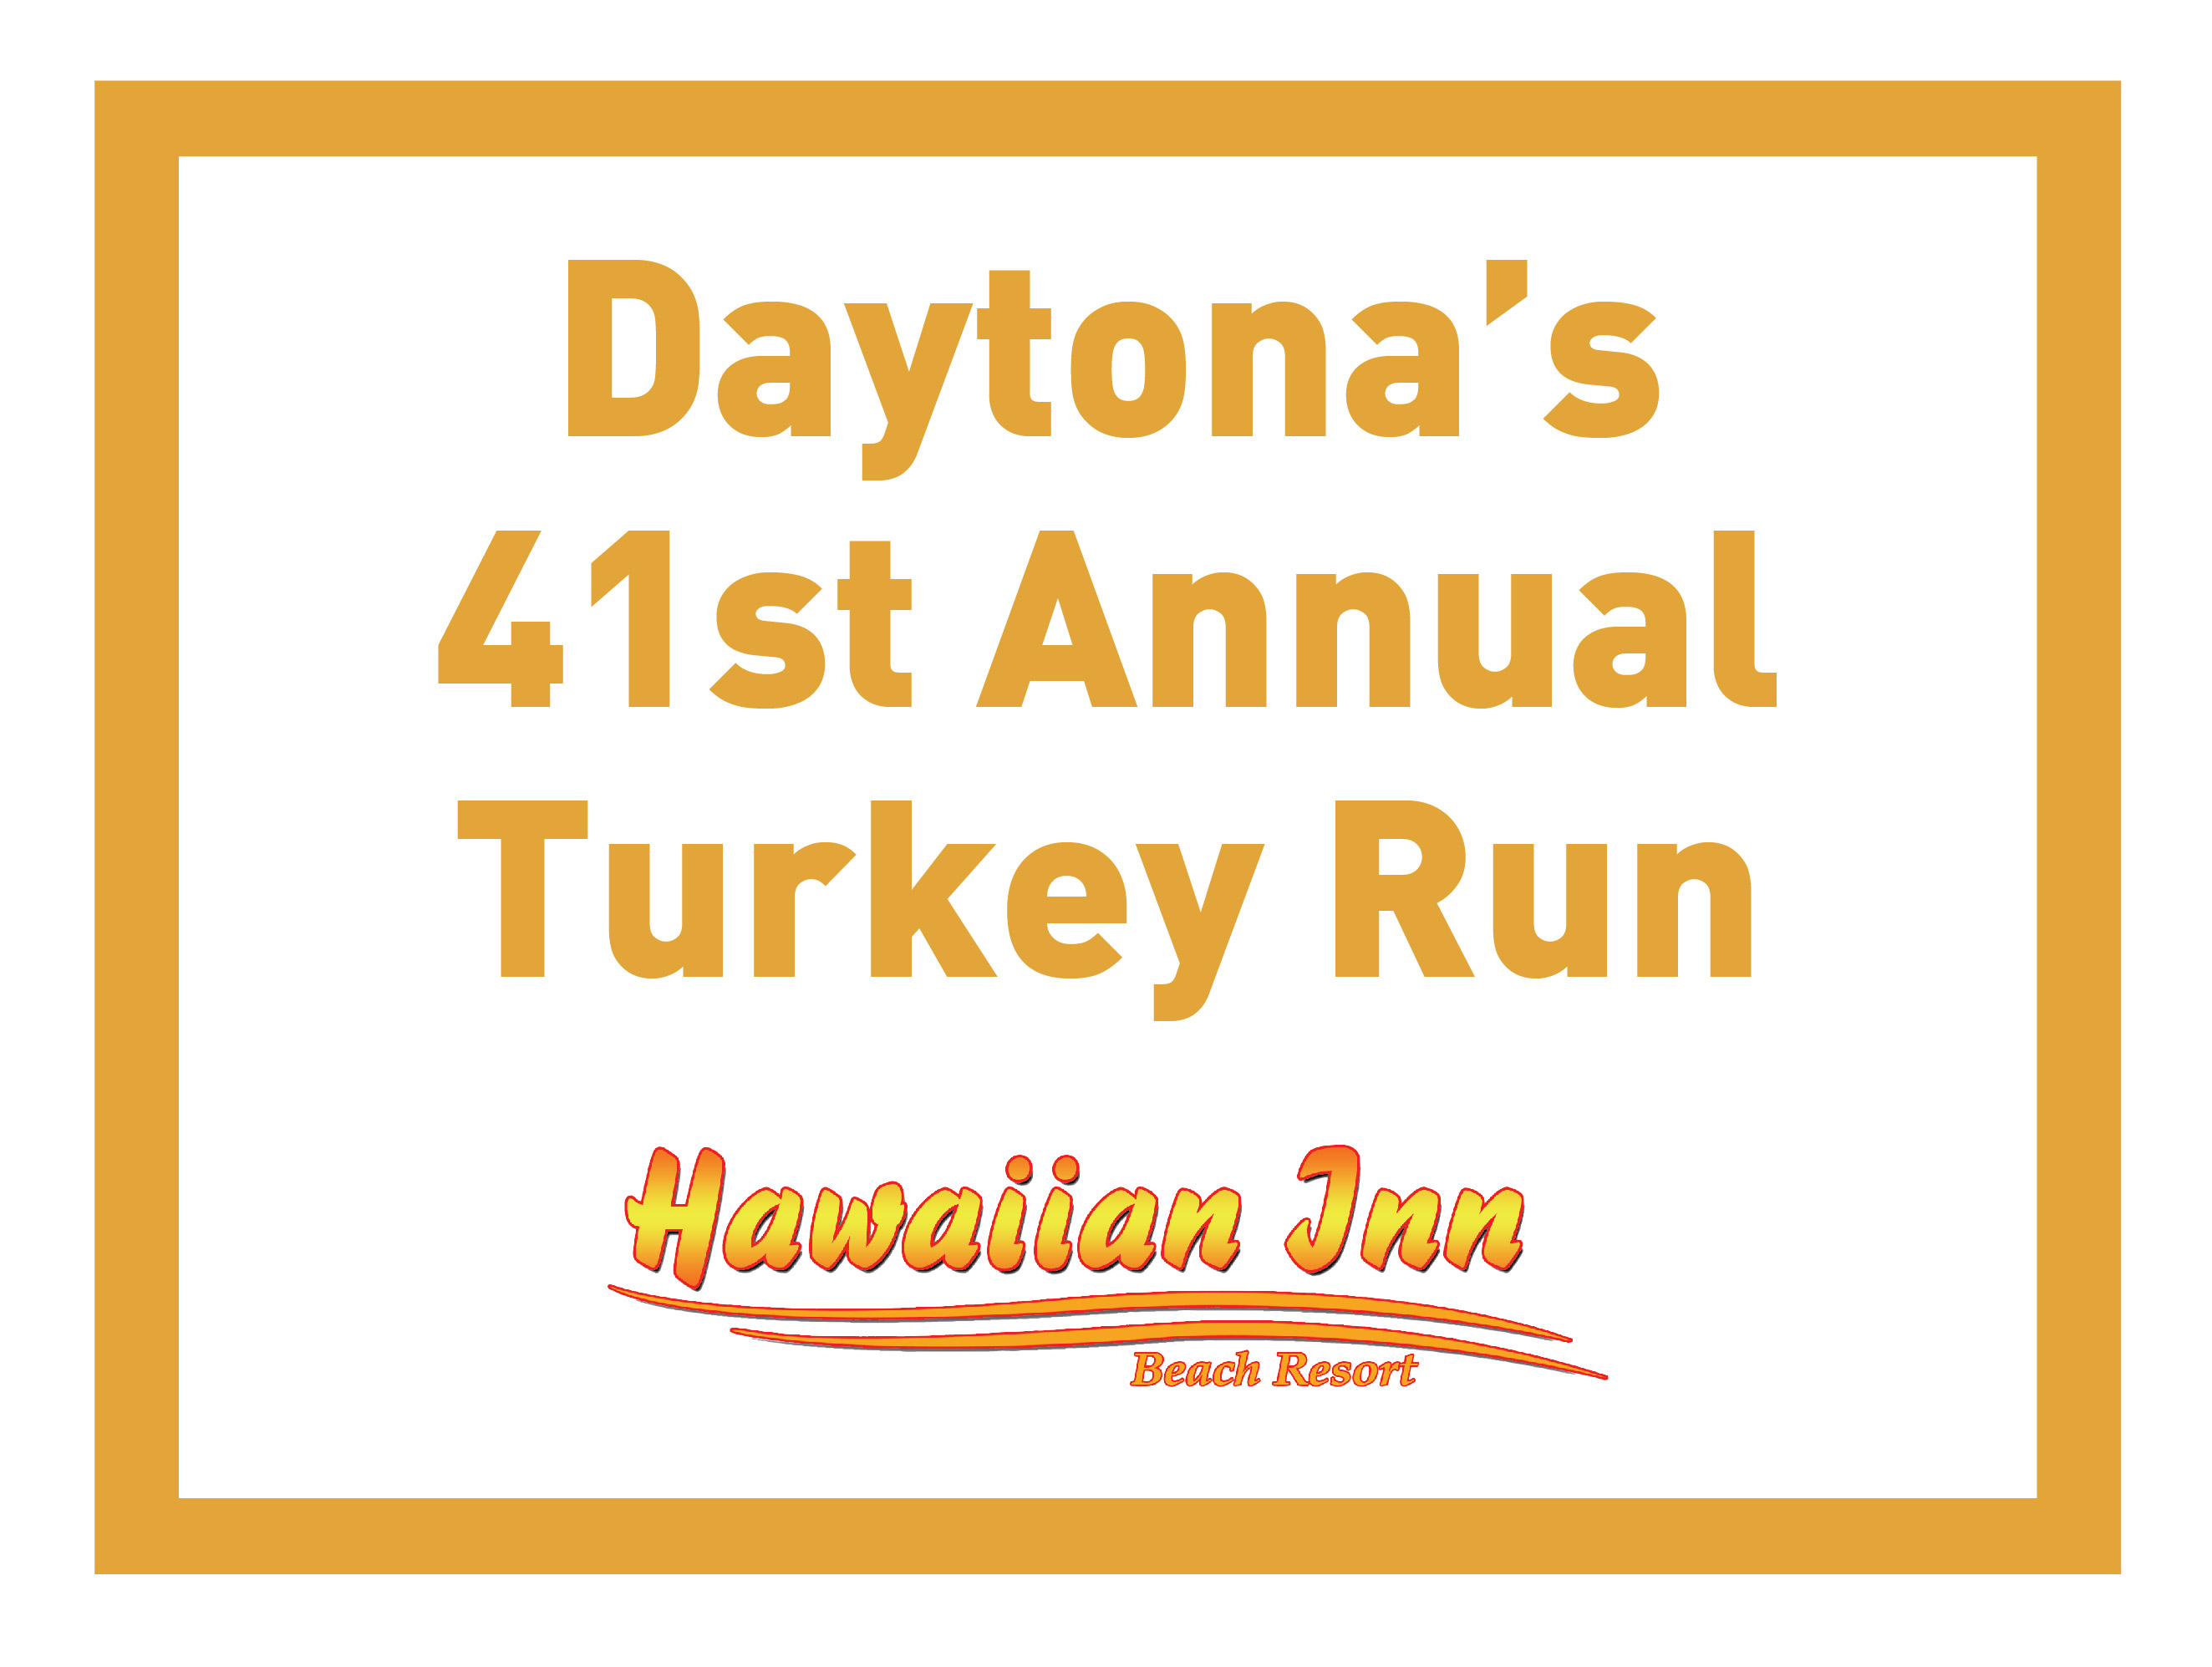 Daytona's 41st Annual Turkey Run5